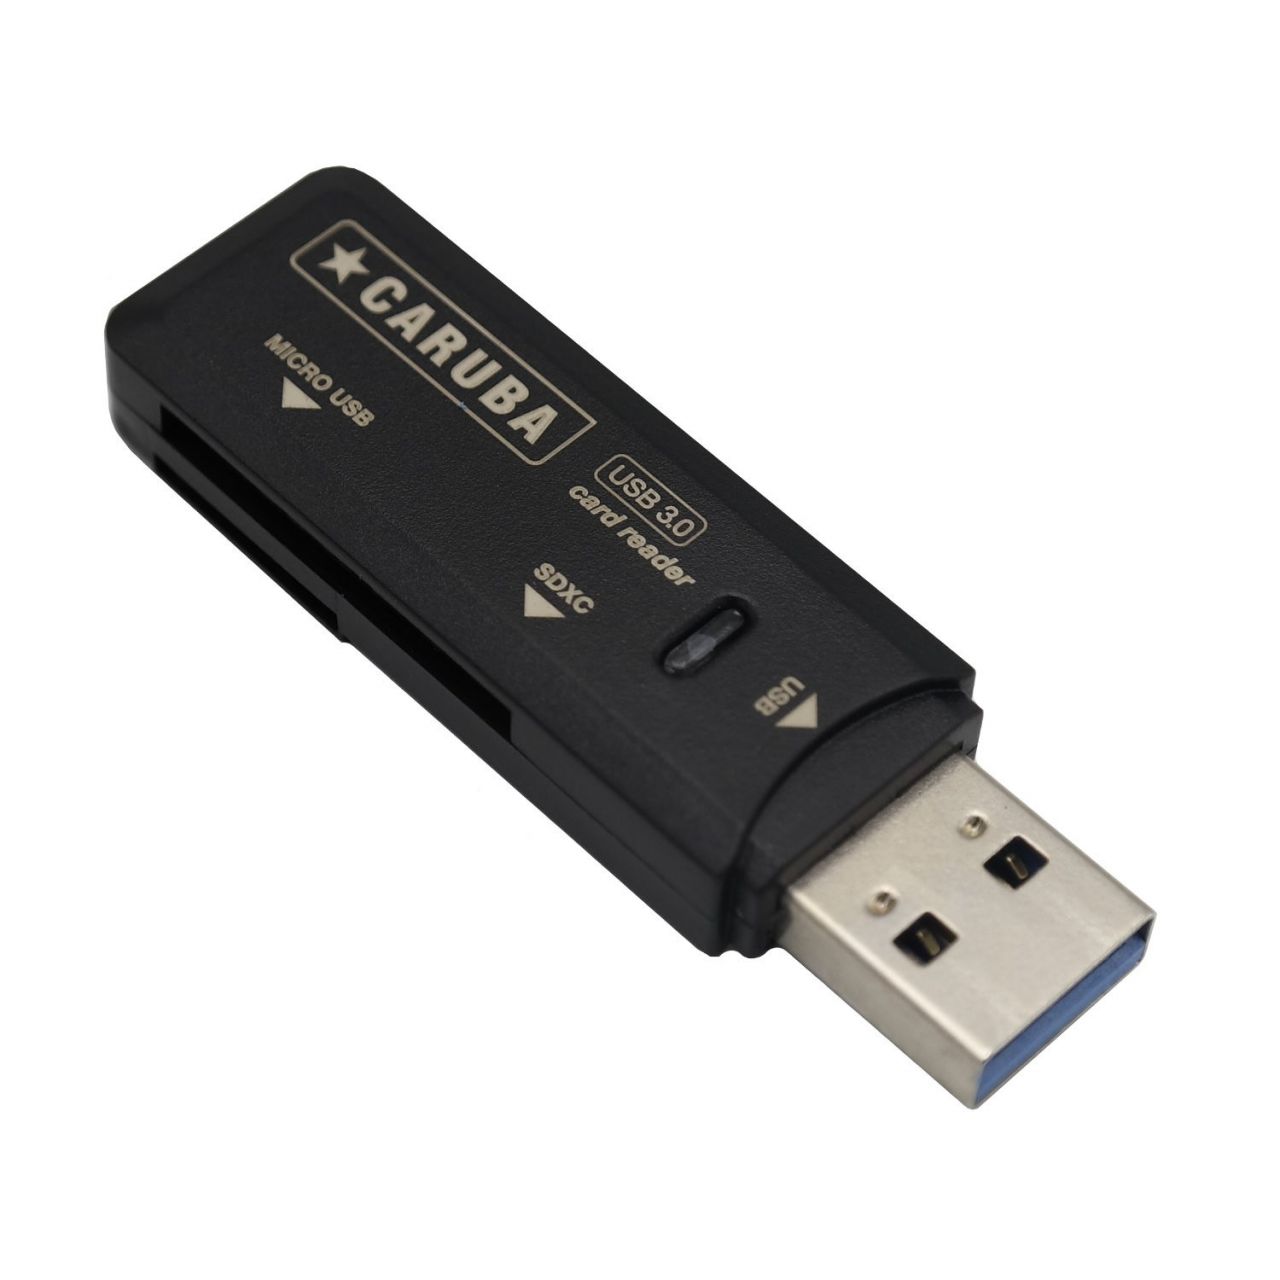 Caruba memóriakártya olvasó USB 3.0 csatlakozással micro- és SD kártyákhoz